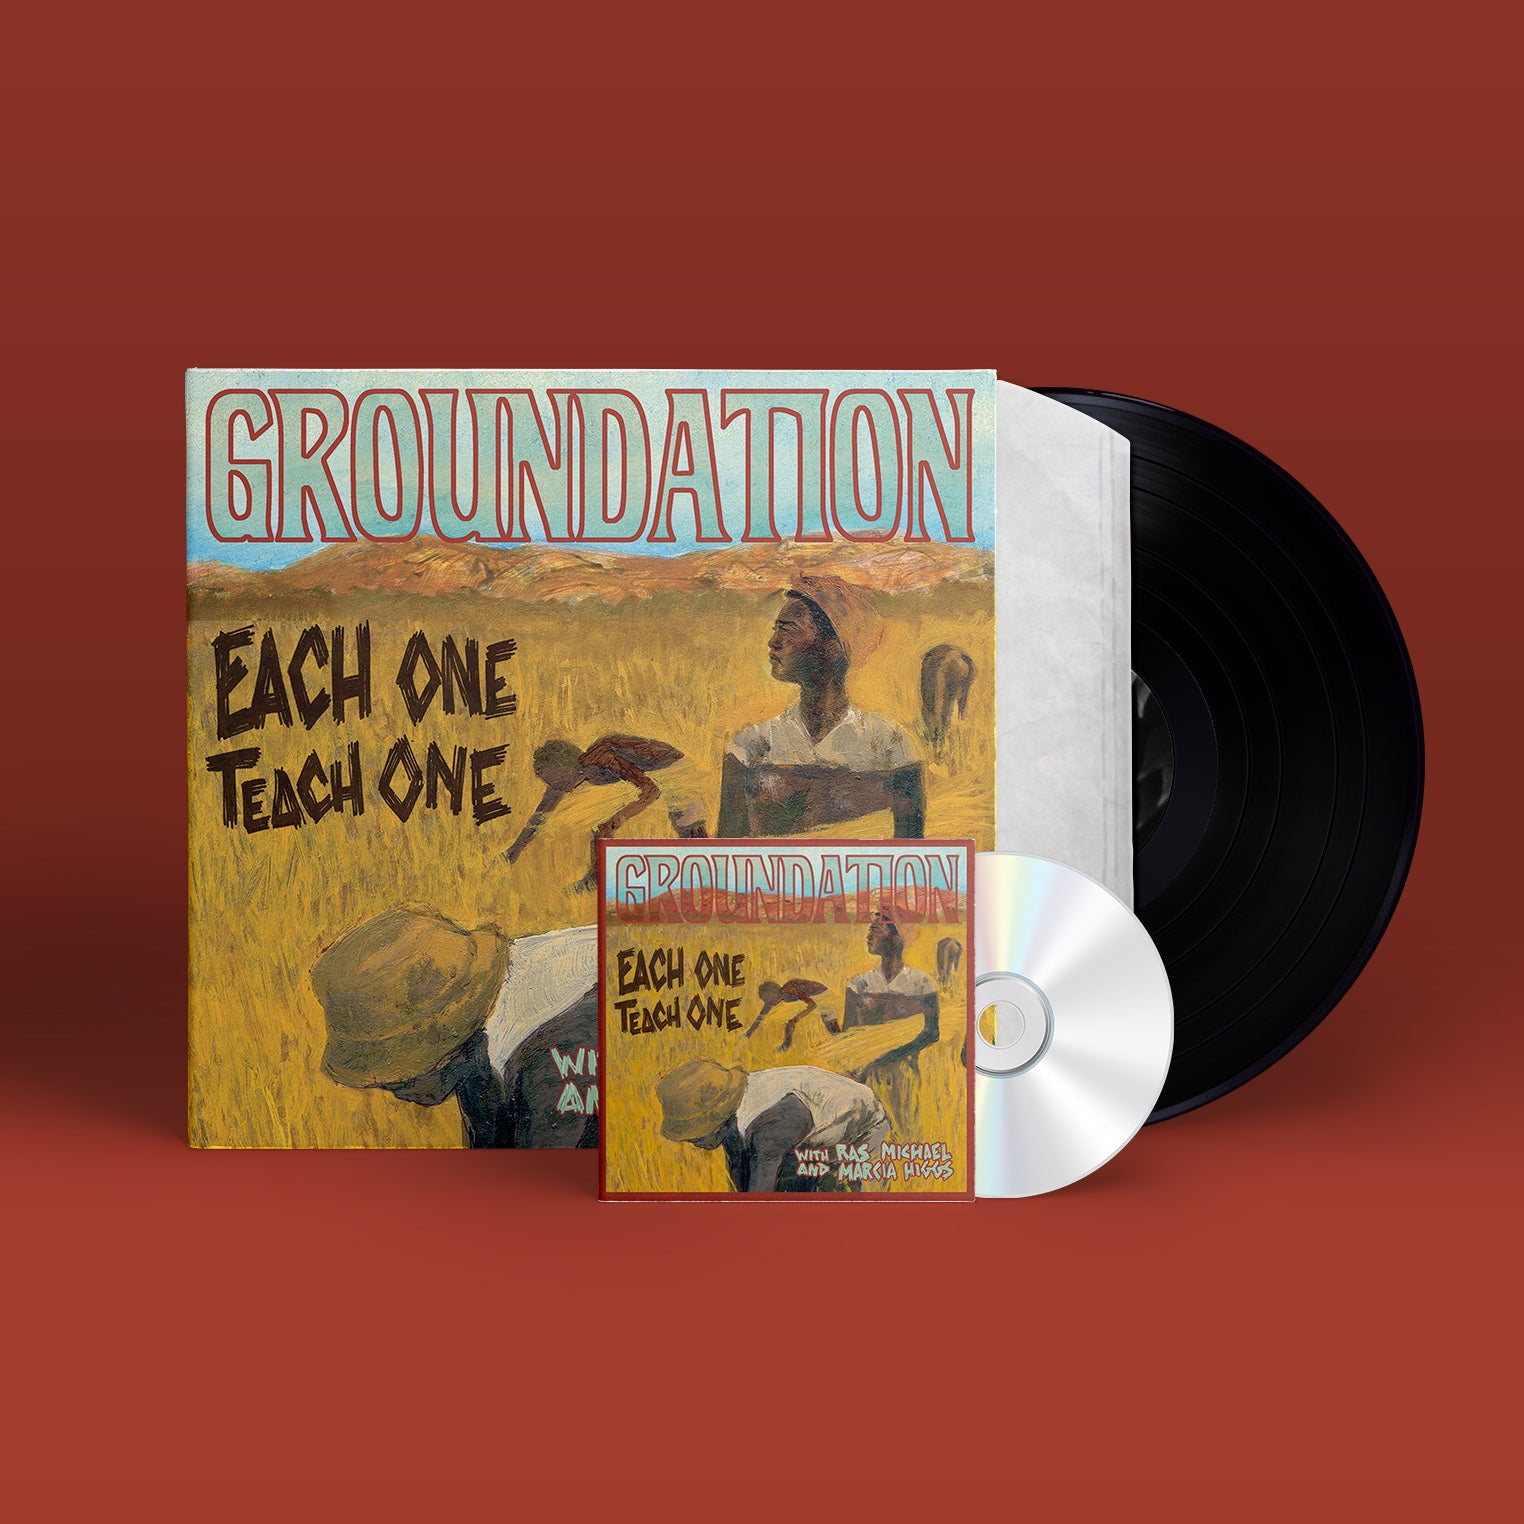 Groundation - Each one teach one